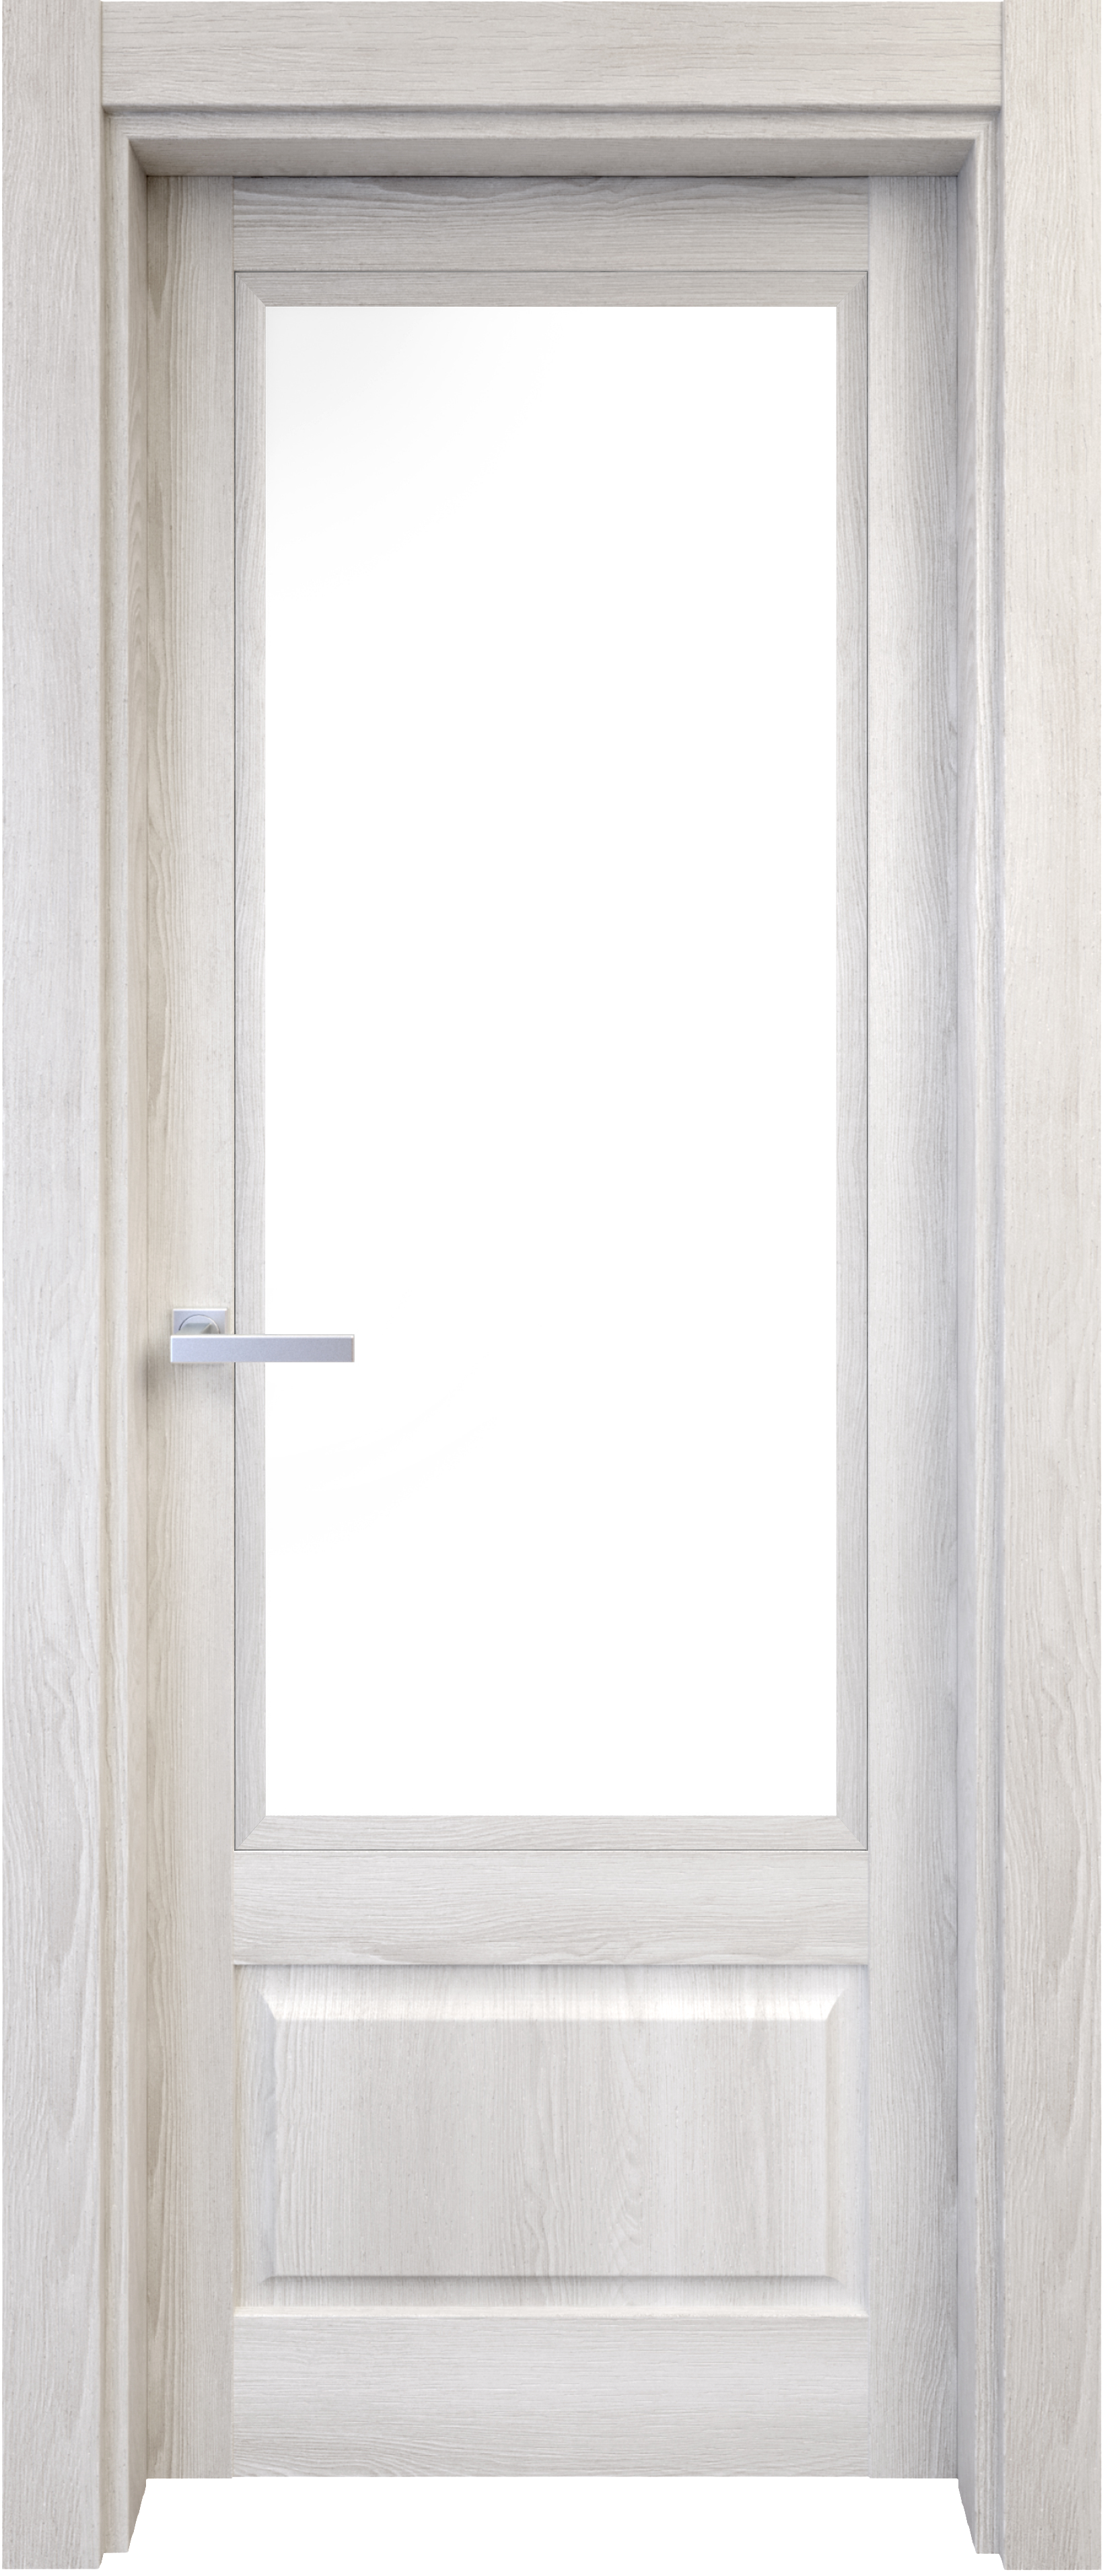 Puerta abatible sofia blanca line plus con cristal blanco izquierda de 72.5